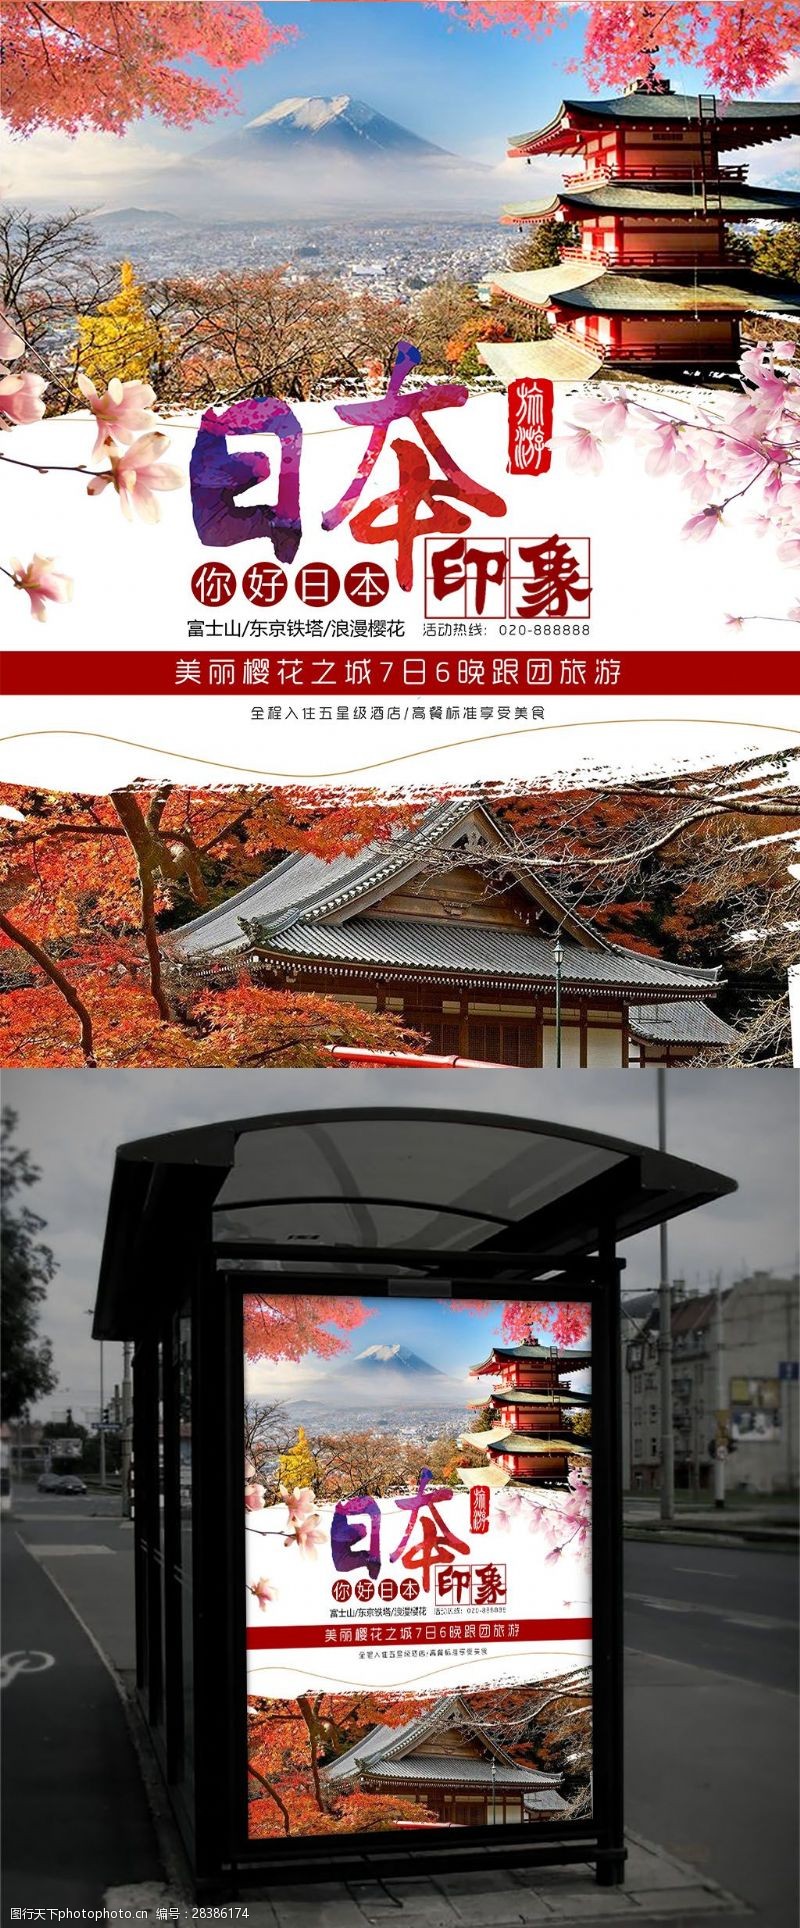 樱花旅游剪影水墨日本旅游海报